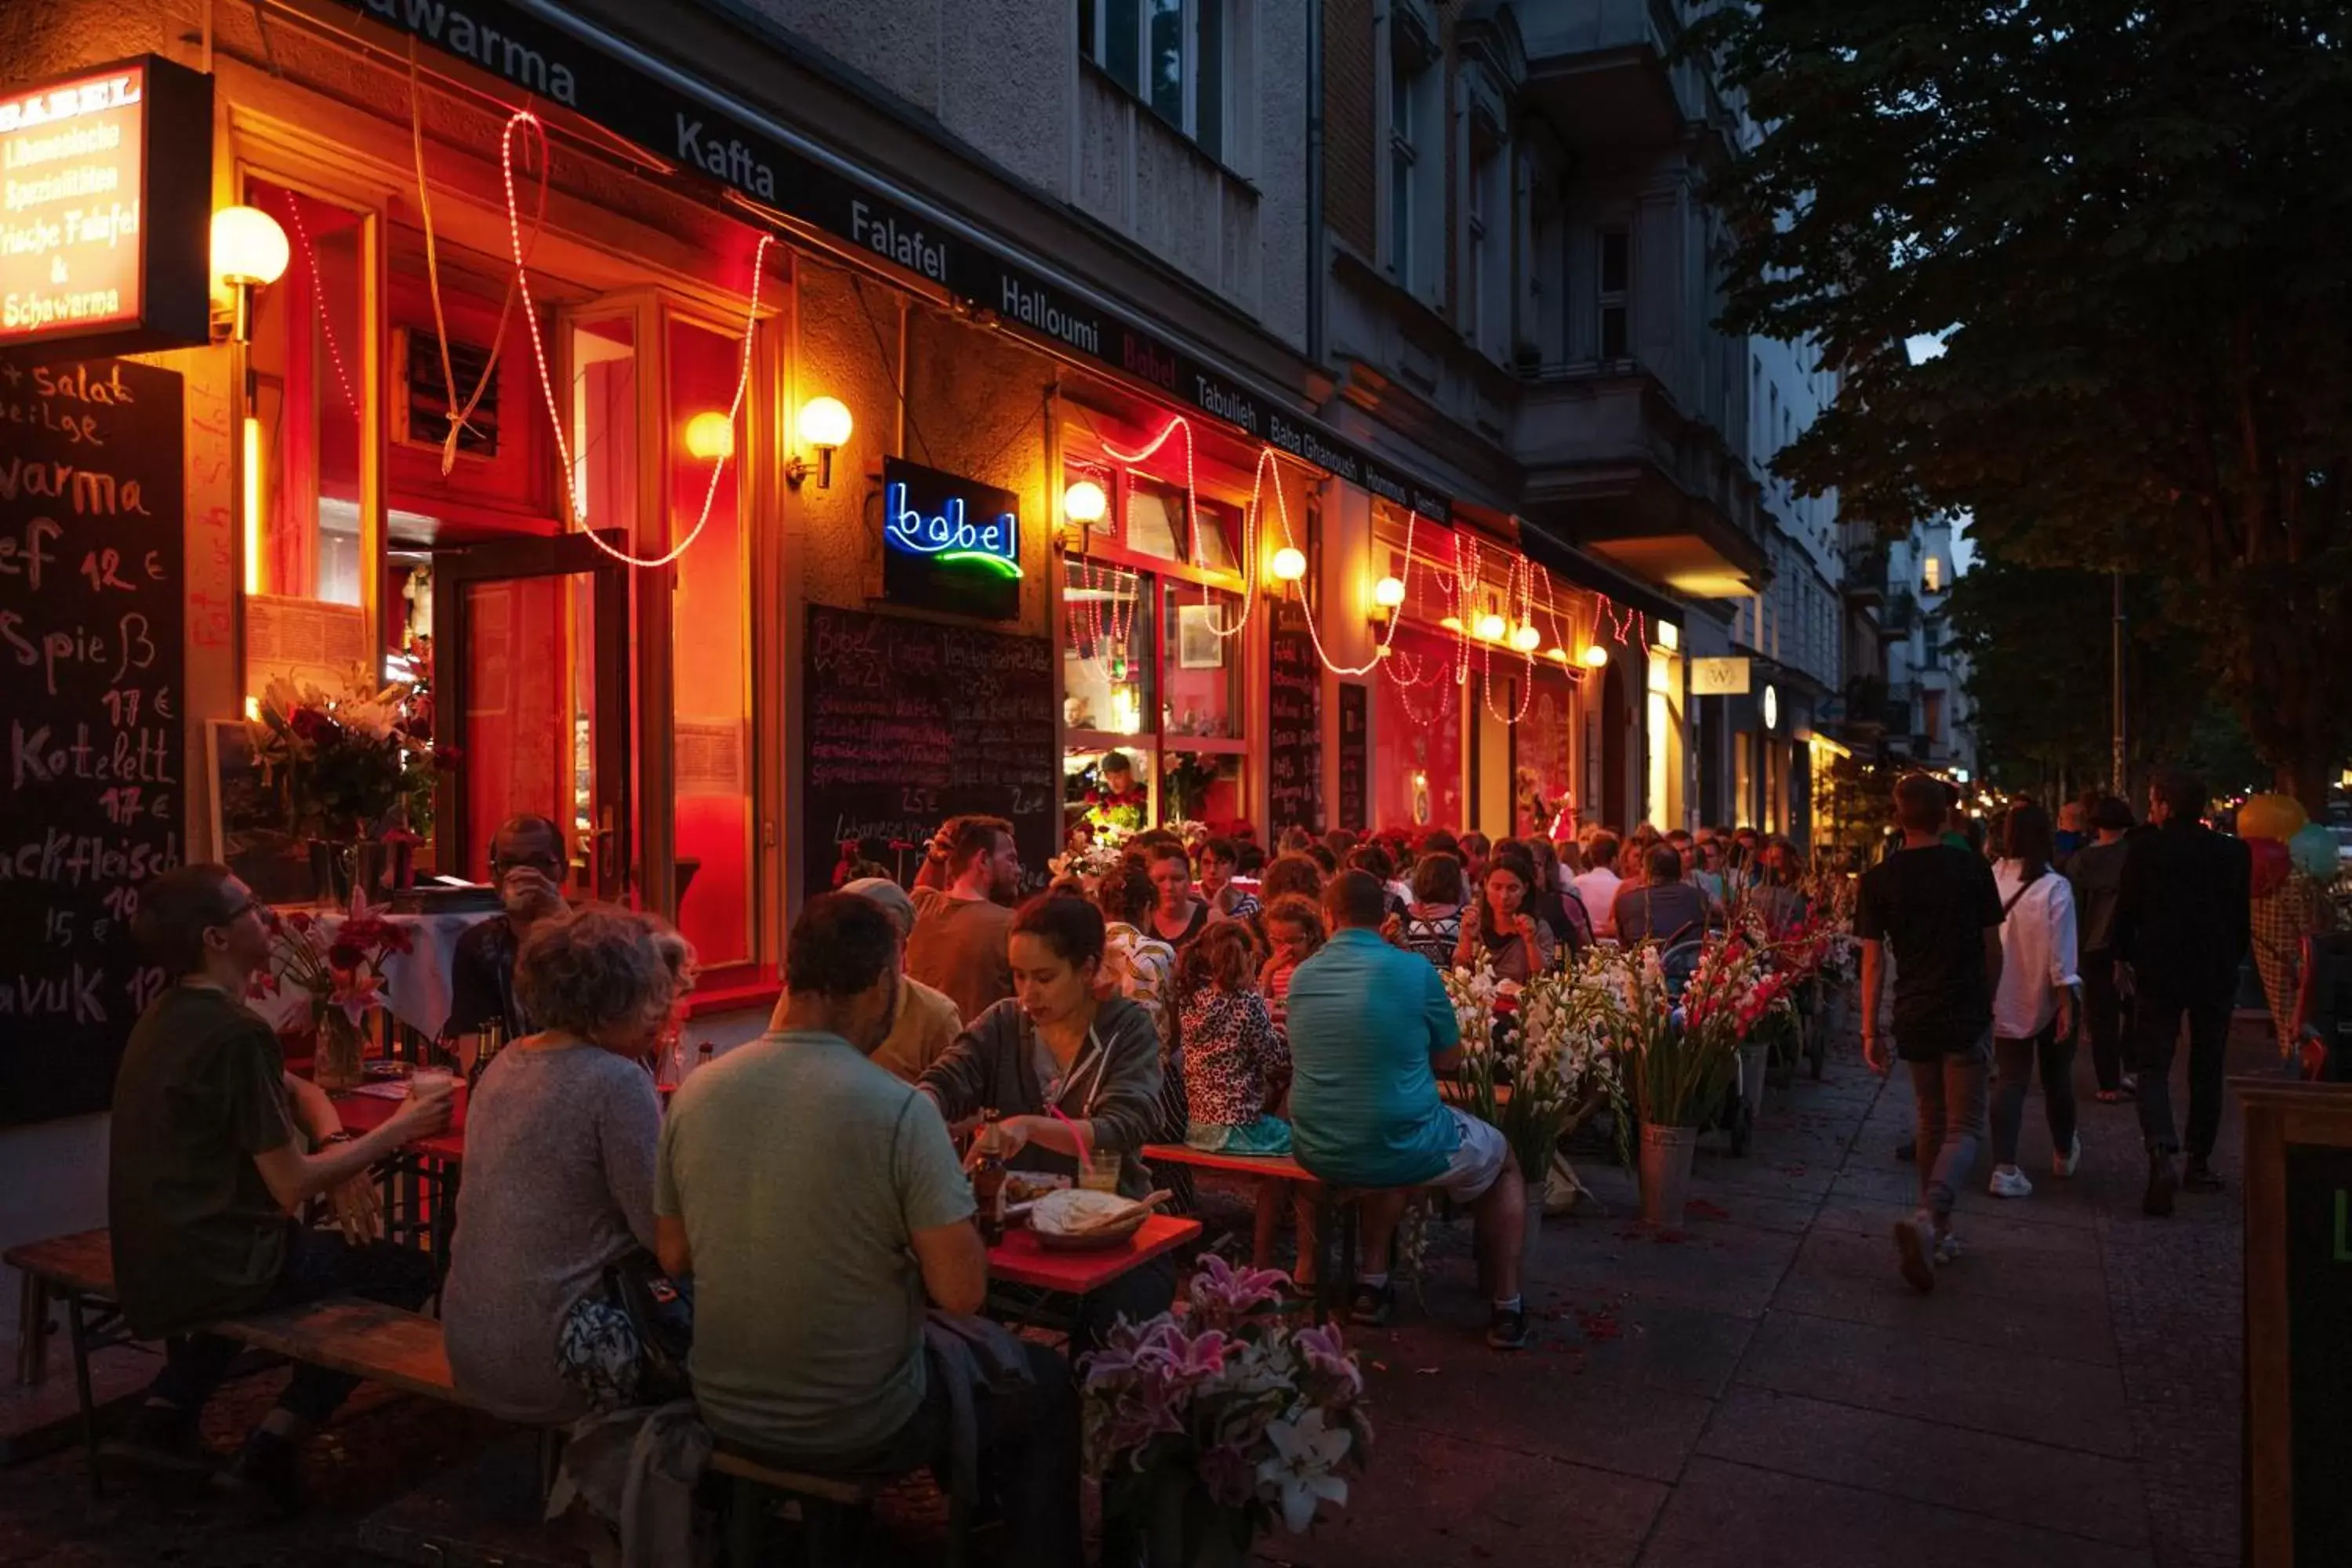 Night, Restaurant/Places to Eat in Pfefferbett Hostel Berlin